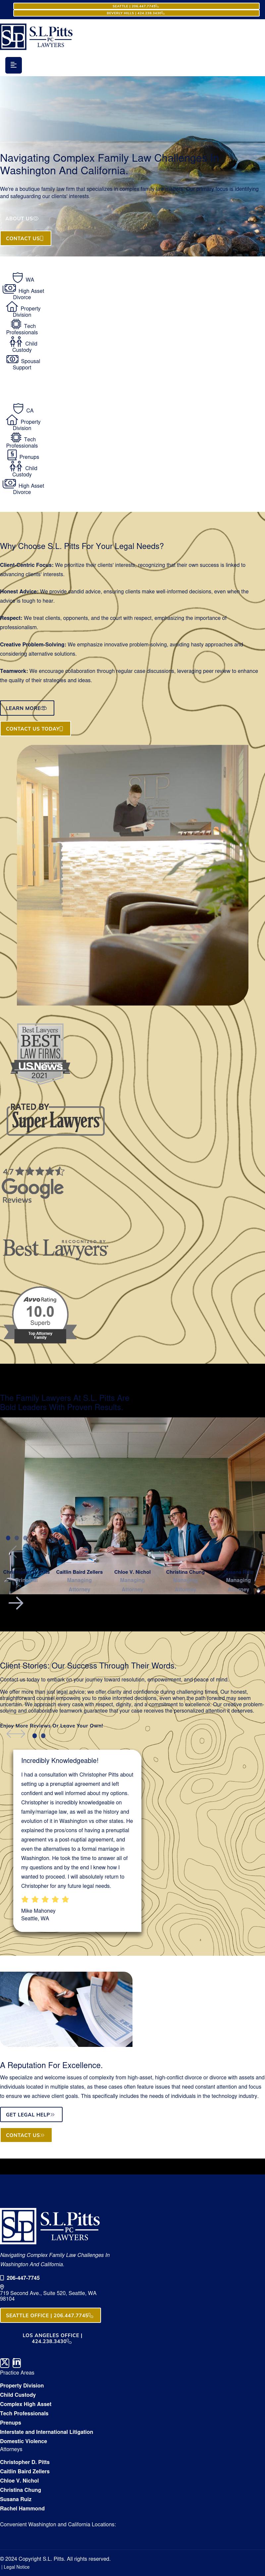 S.L. Pitts & Associates PLLC - Kirkland WA Lawyers